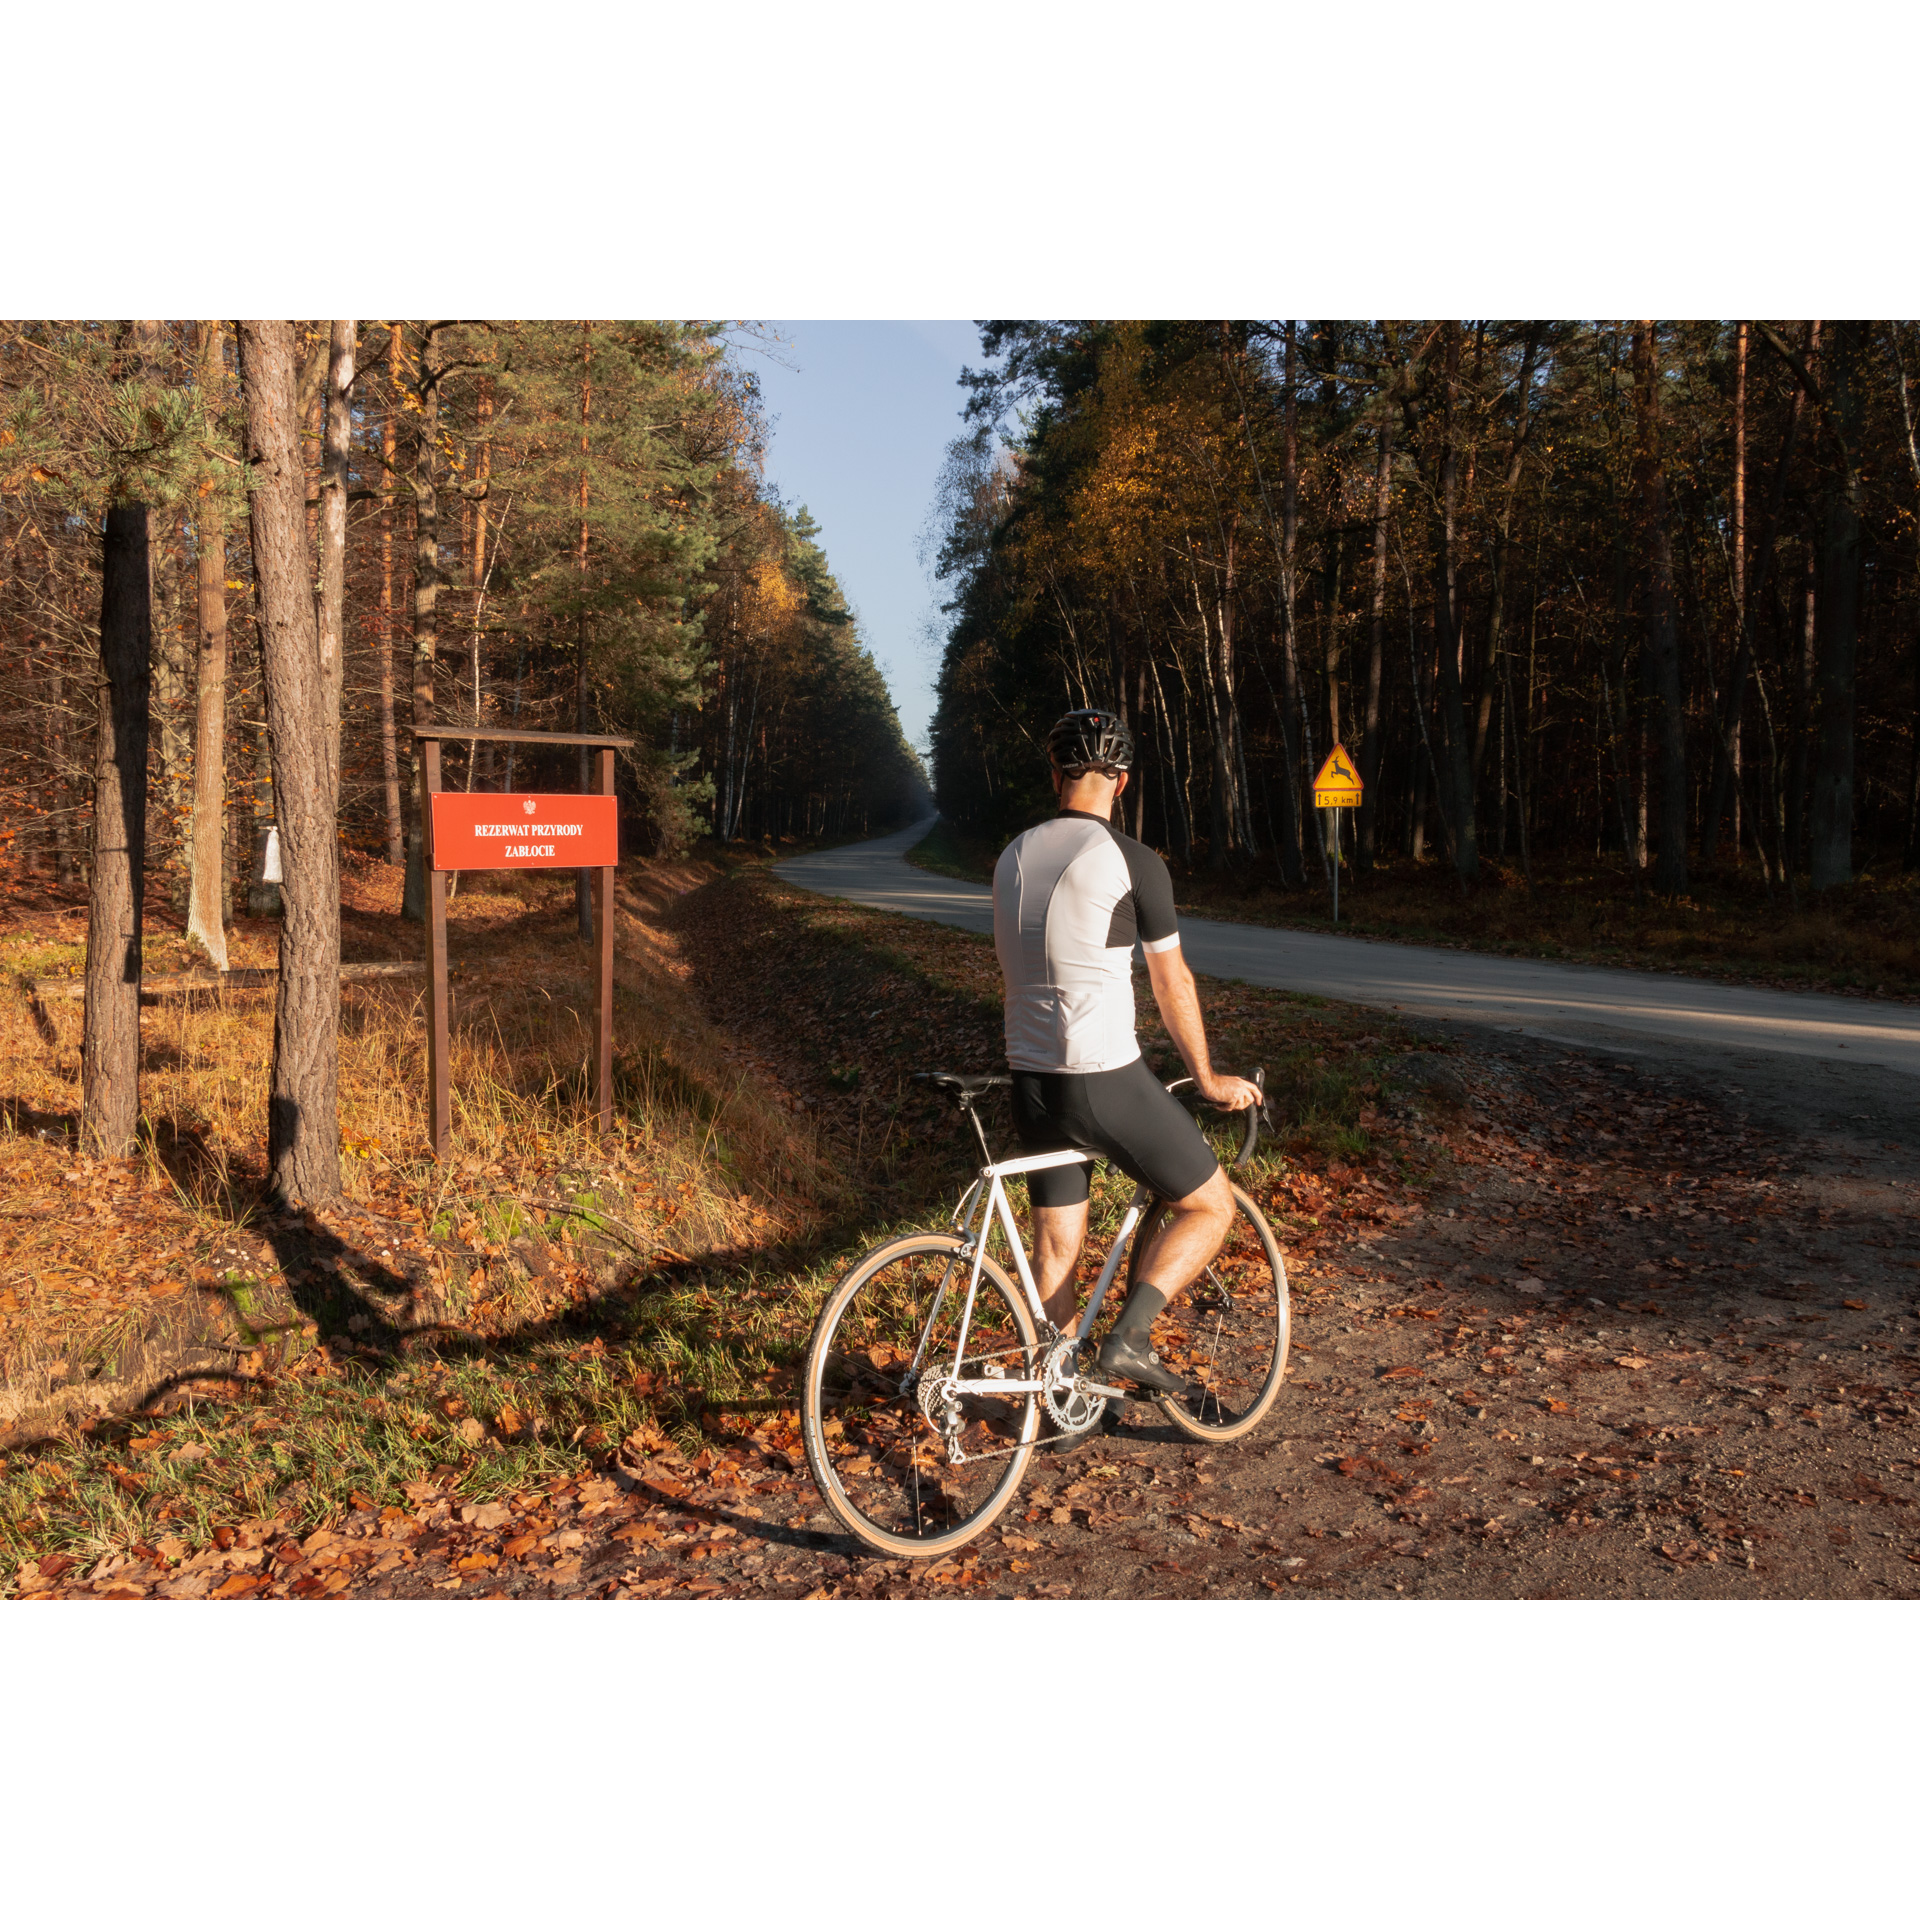 Rowerzysta w biało-czarnym stroju zatrzymujący się w jesiennym lesie na drodze bocznej spoglądający przed siebie w kierunku drogi asfaltowej